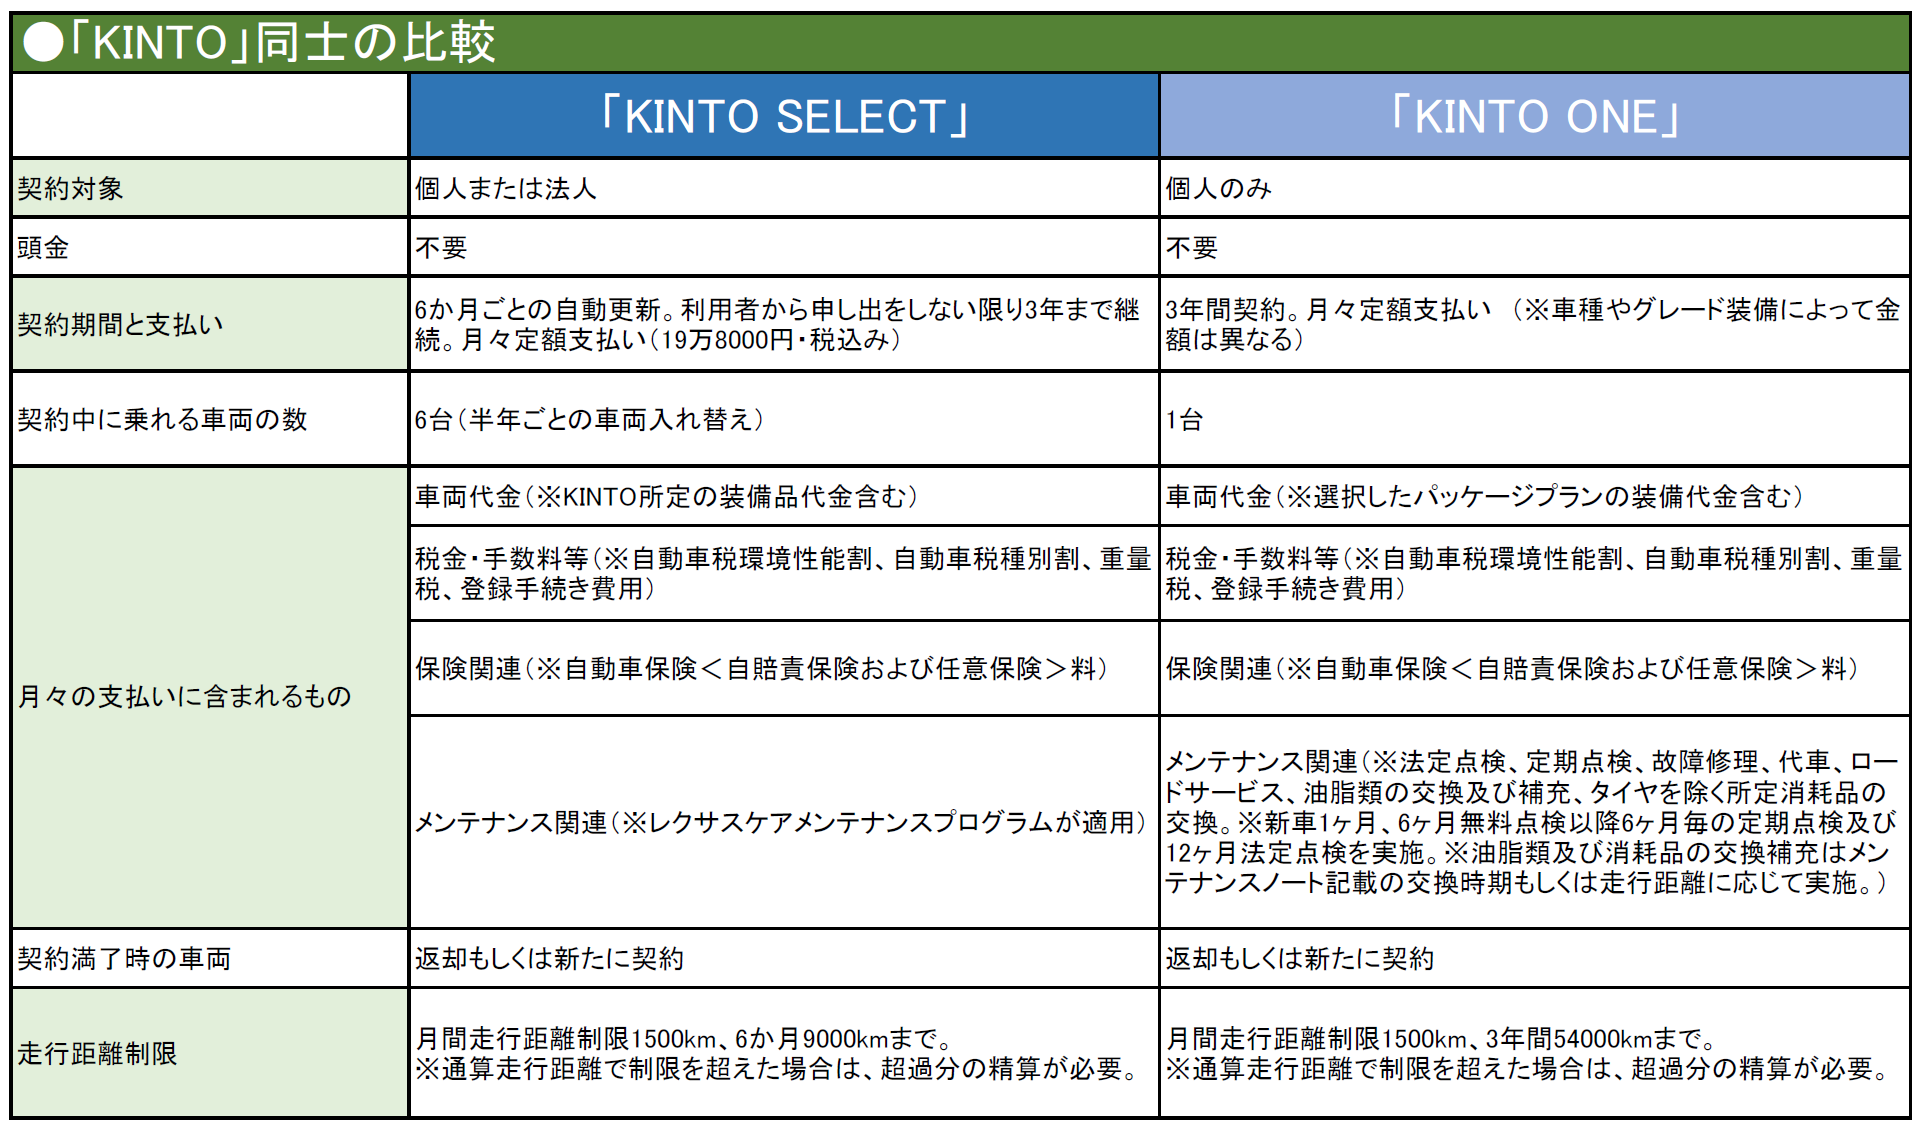 第5回 トヨタ Kinto Select キントセレクト について 中古車なら グーネット